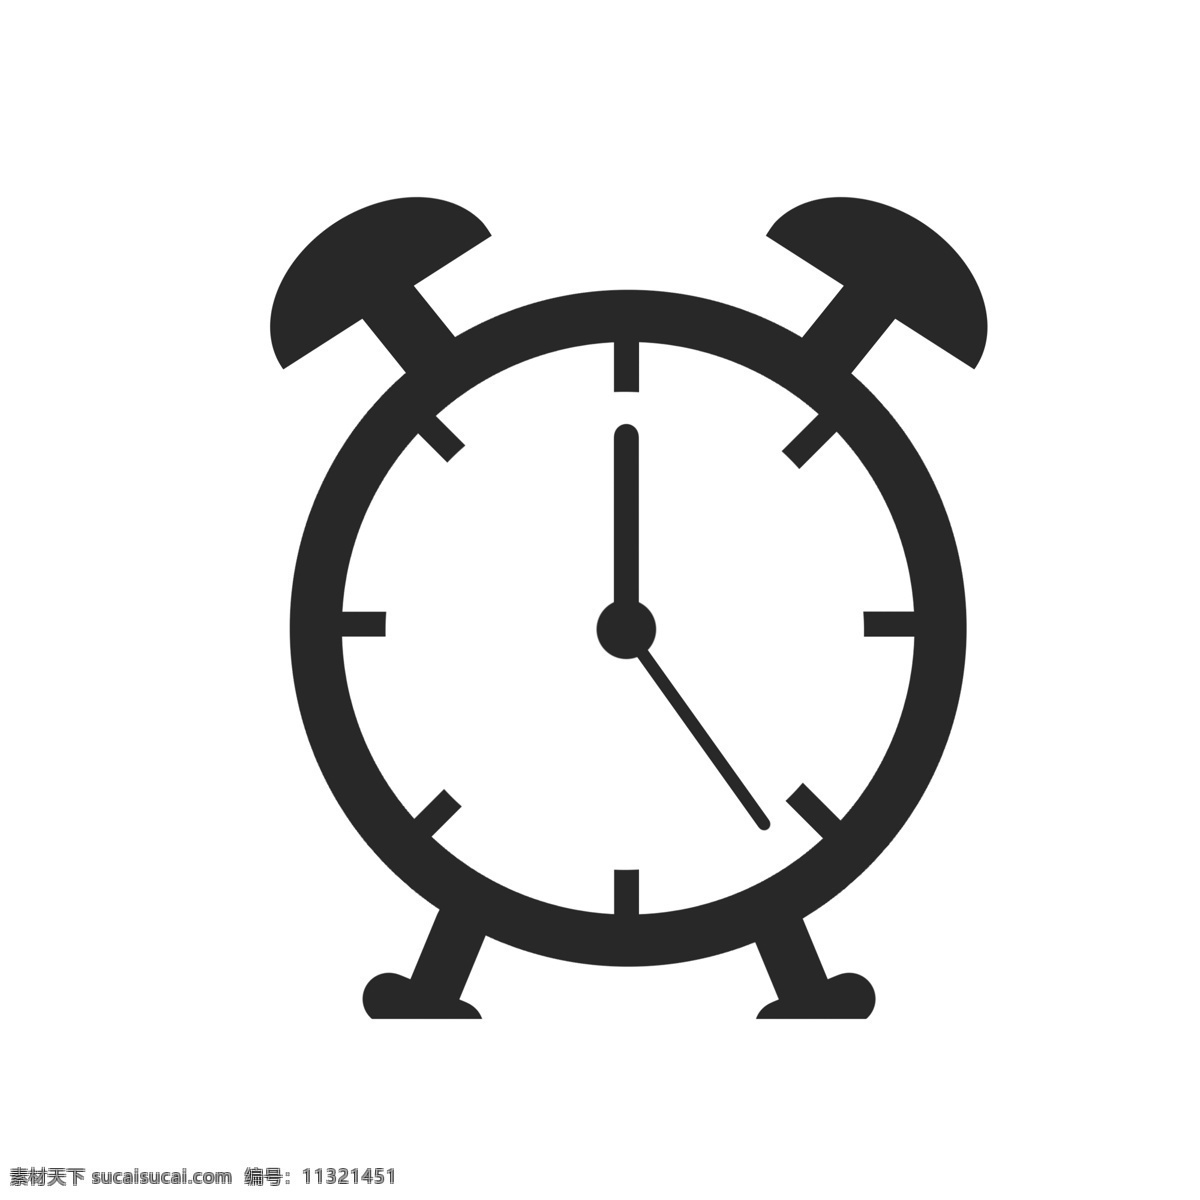 闹钟图标 时钟 手表表面 时间 时钟刻度 钟表 图标 闹钟